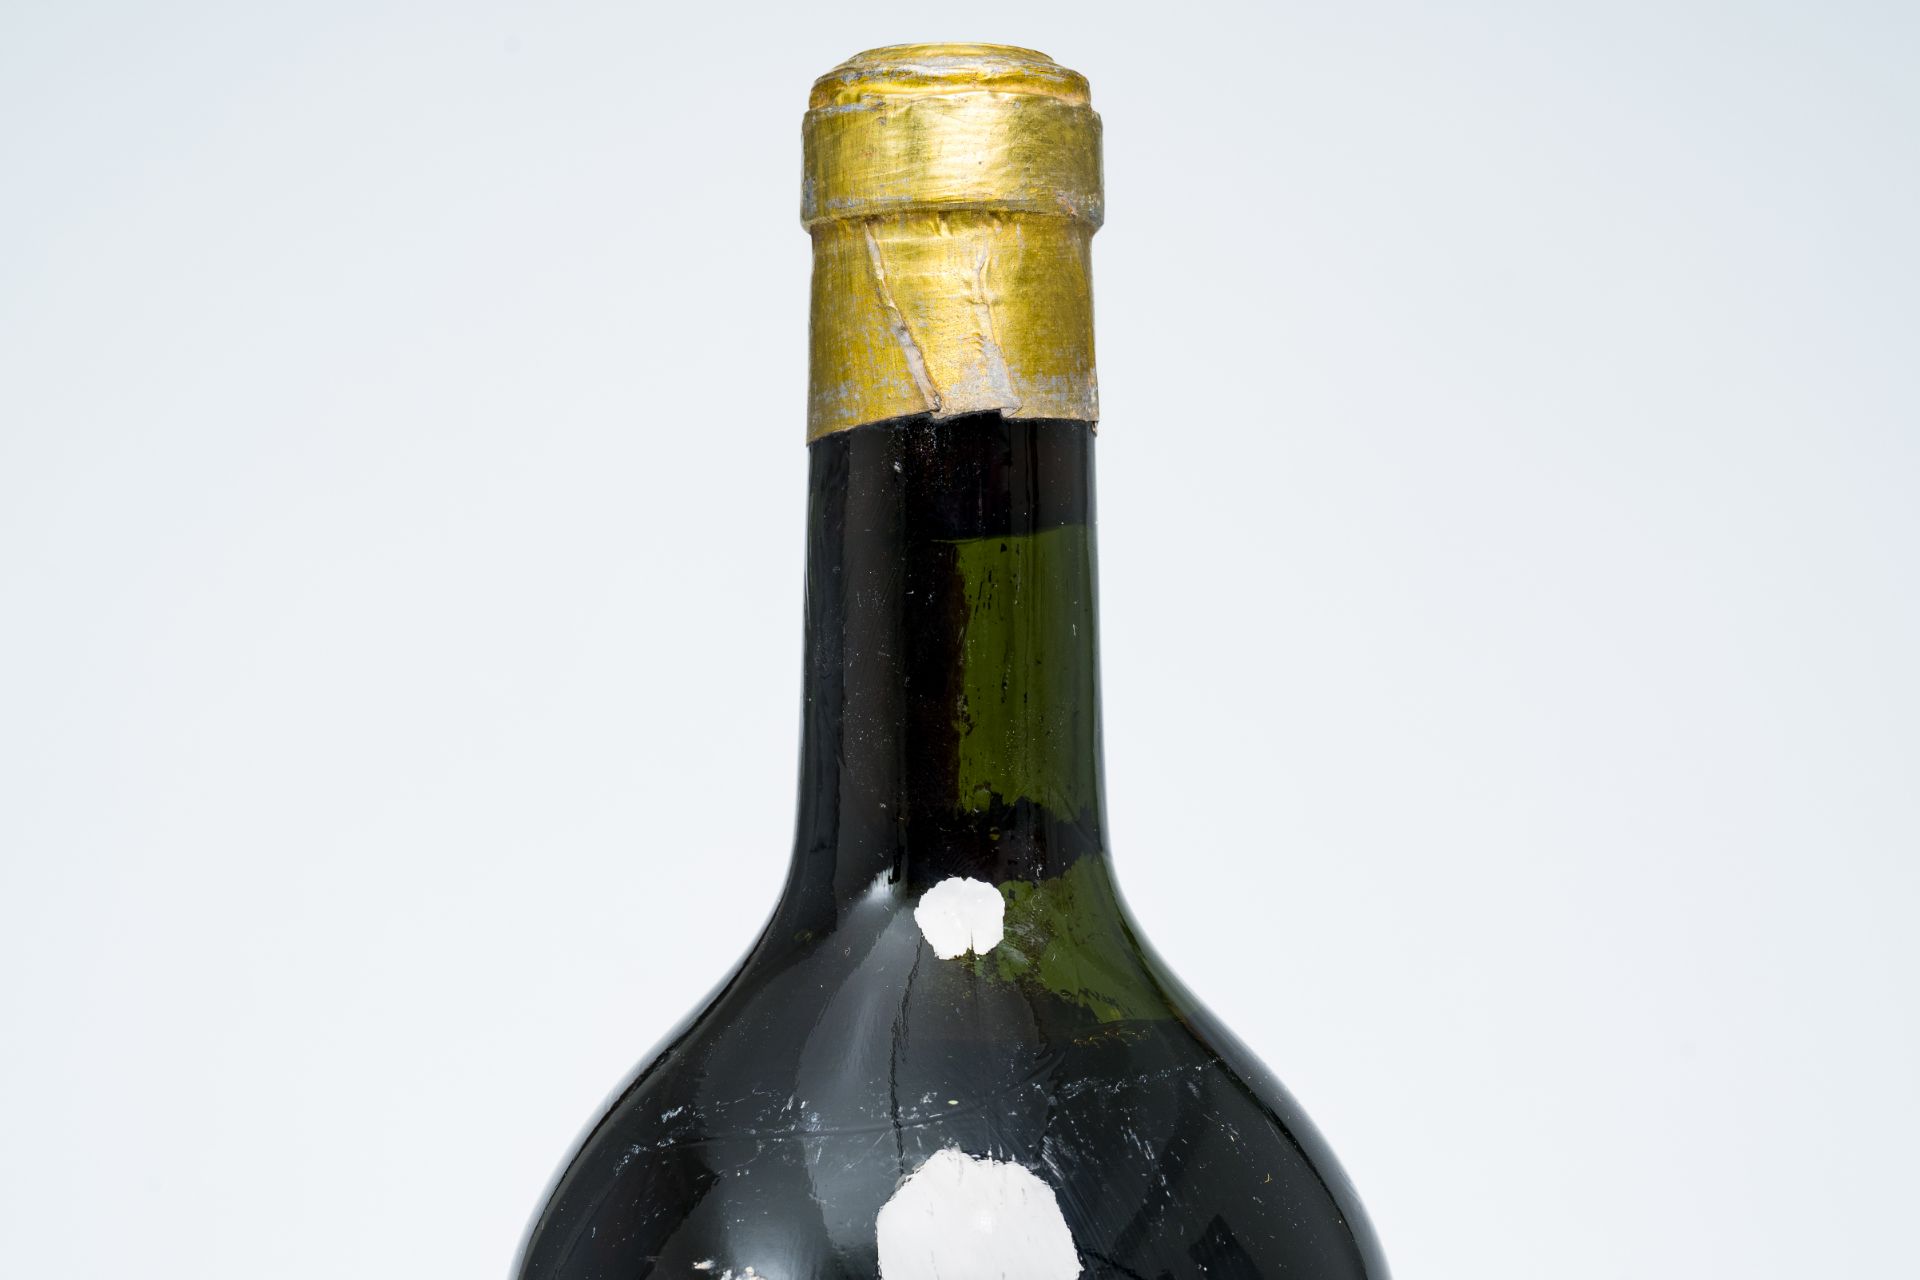 One bottle of Chateau Gruaud-Larose, 1945 - Image 3 of 3